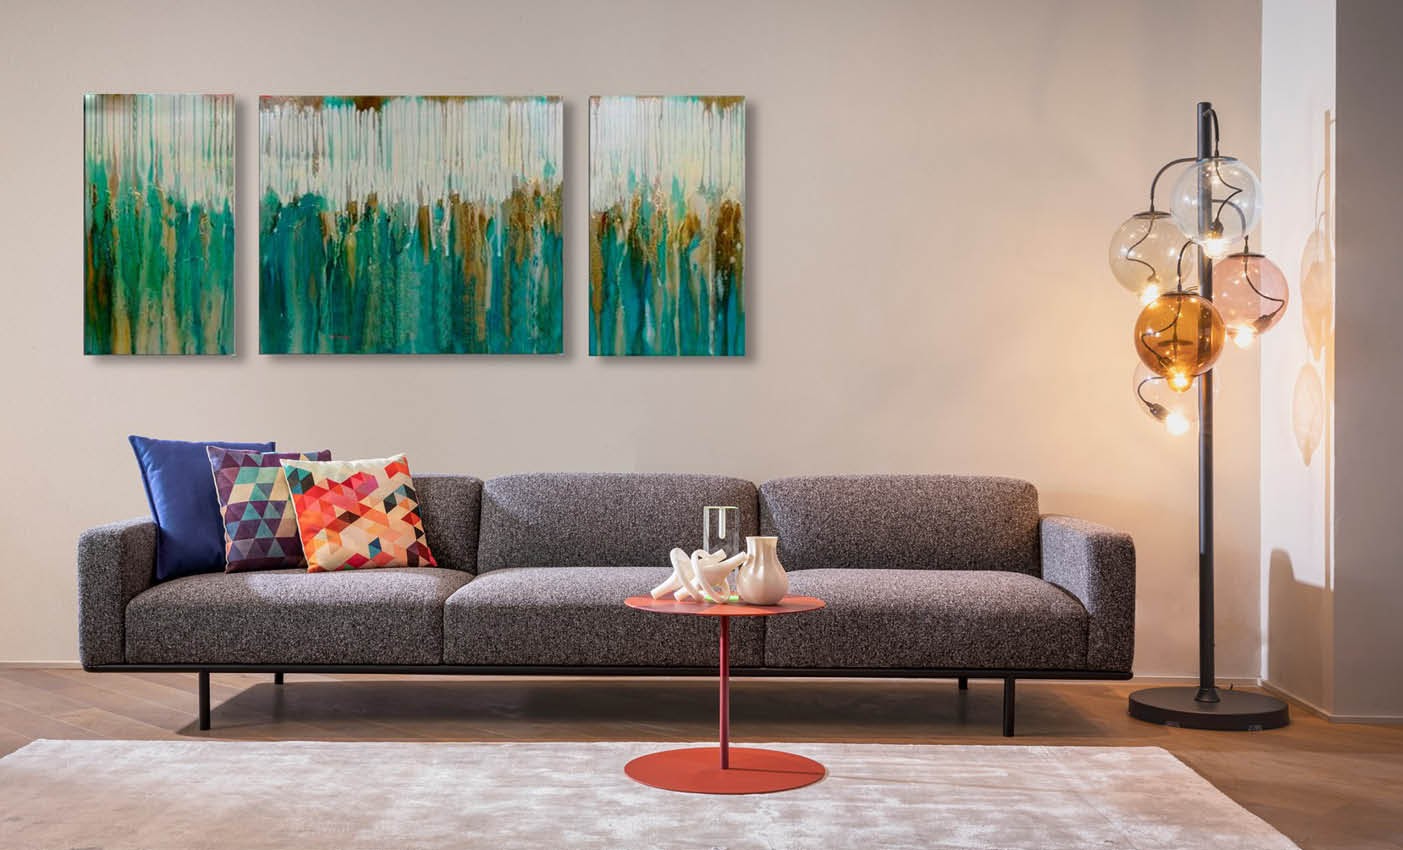 cap ferrat sofa by cappellini presented during milan design city 2020